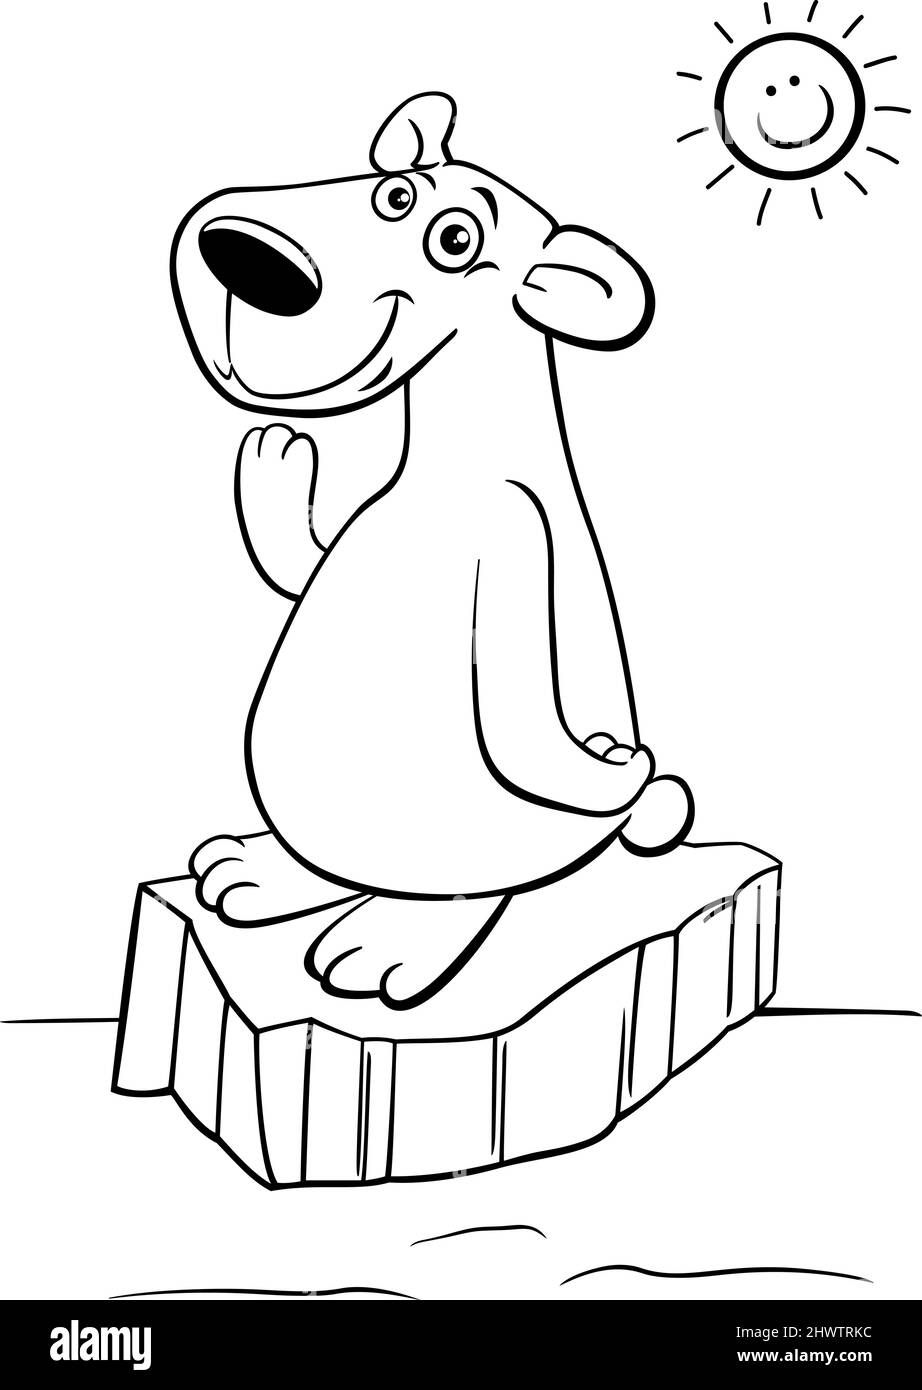 Schwarz-Weiß-Cartoon-Illustration des Eisbären Tiercharakter in der arktischen Färbung Buchseite Stock Vektor